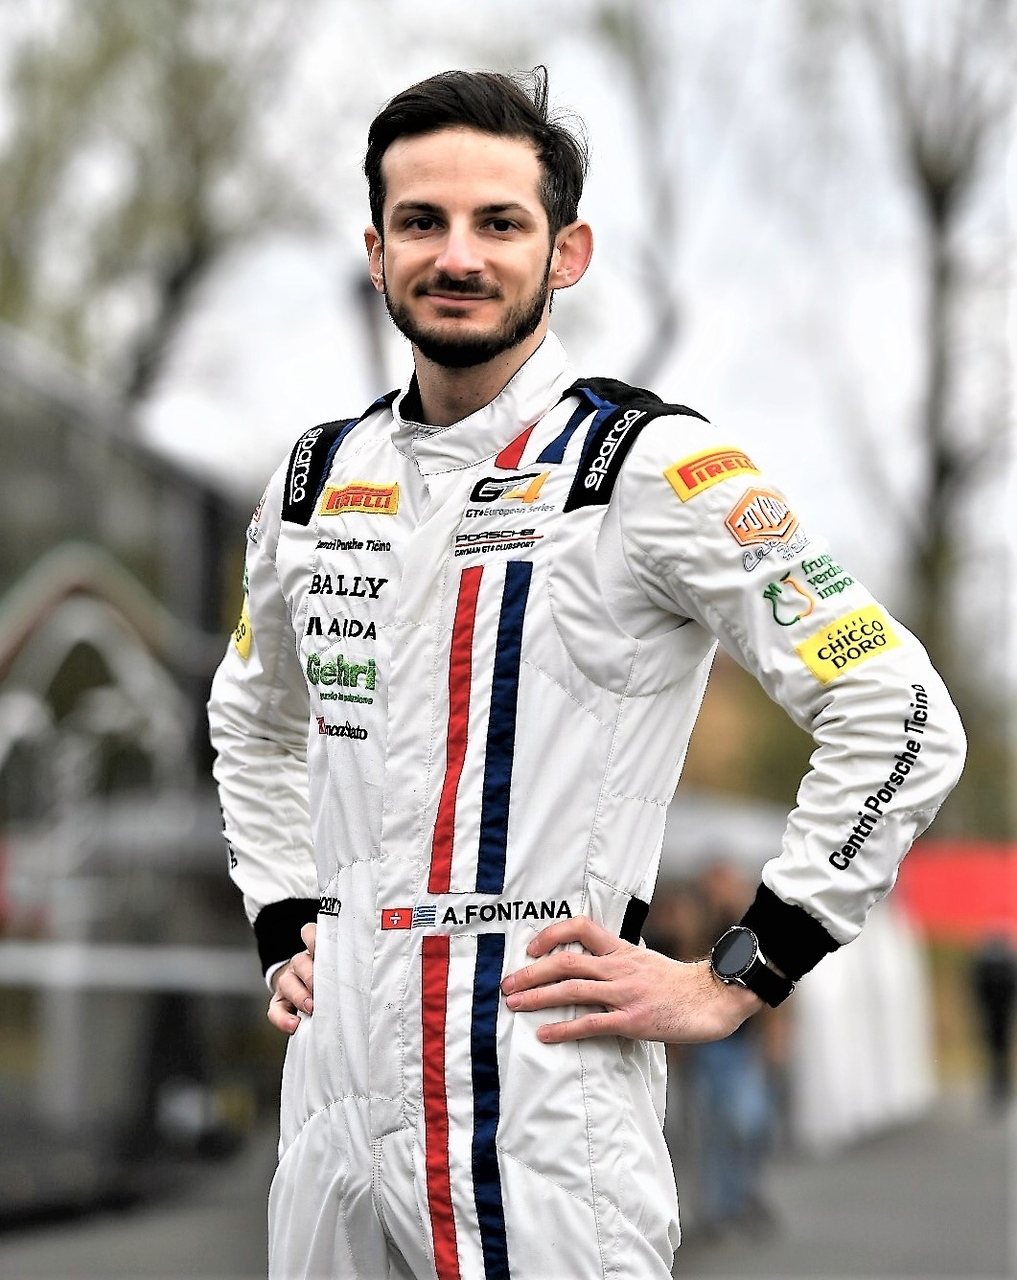 Alex Fontana：來自提契諾州的車手，5 年 1992 月 1 日出生於盧加諾，為瑞士意大利語廣播電台和電視台負責一級方程式大獎賽的技術解說